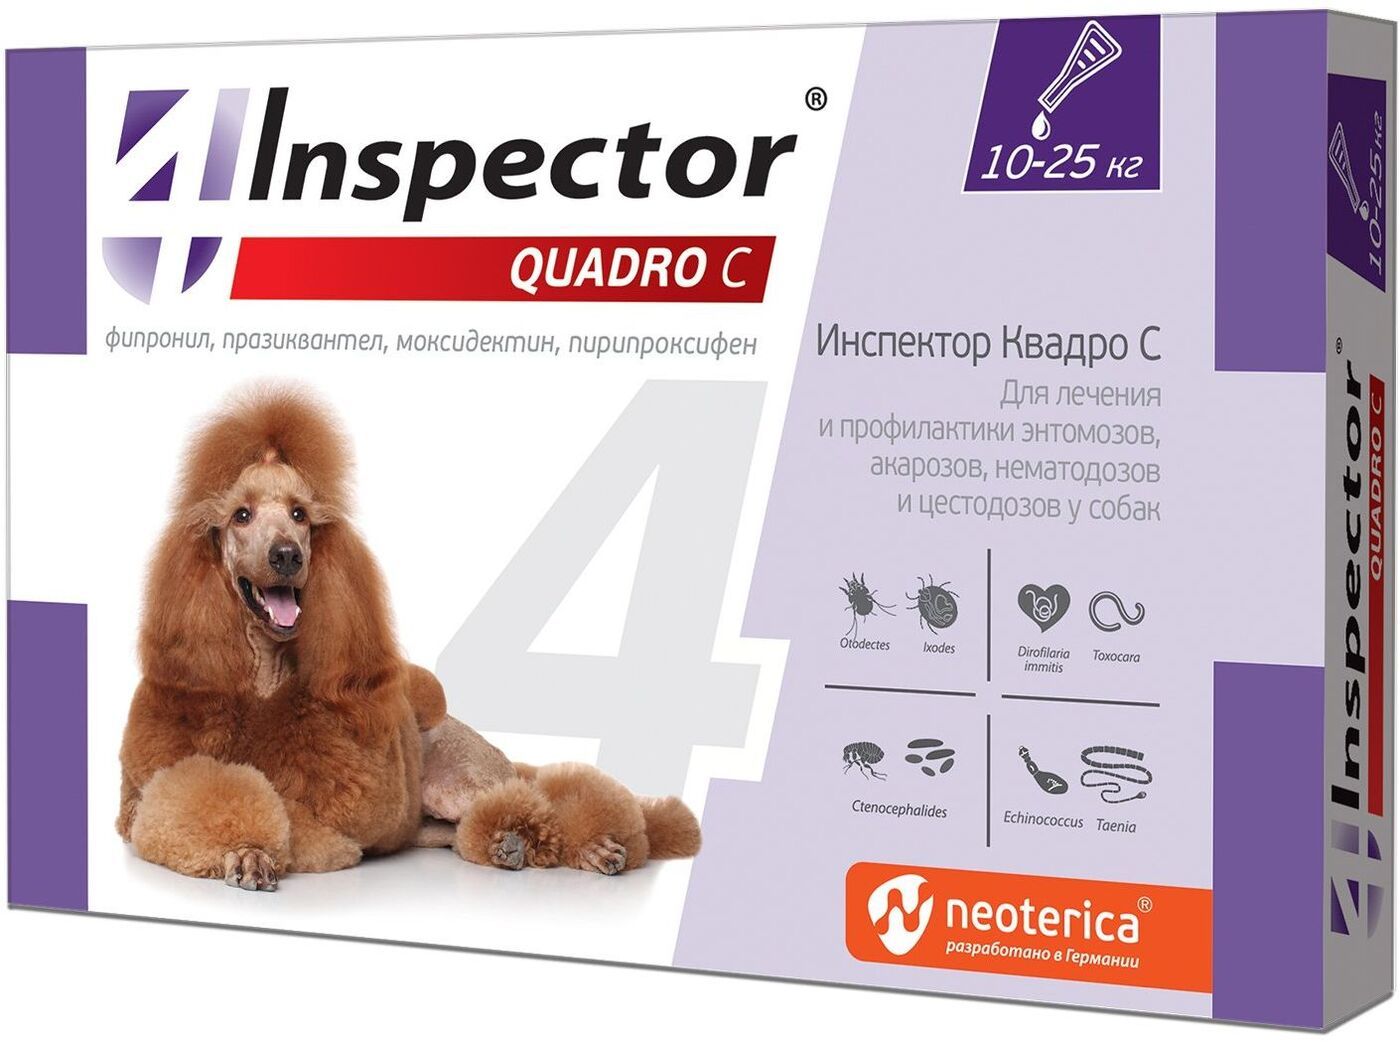  Инспектор Quadro С капли на холку для собак 10-25 кг для питомцев
